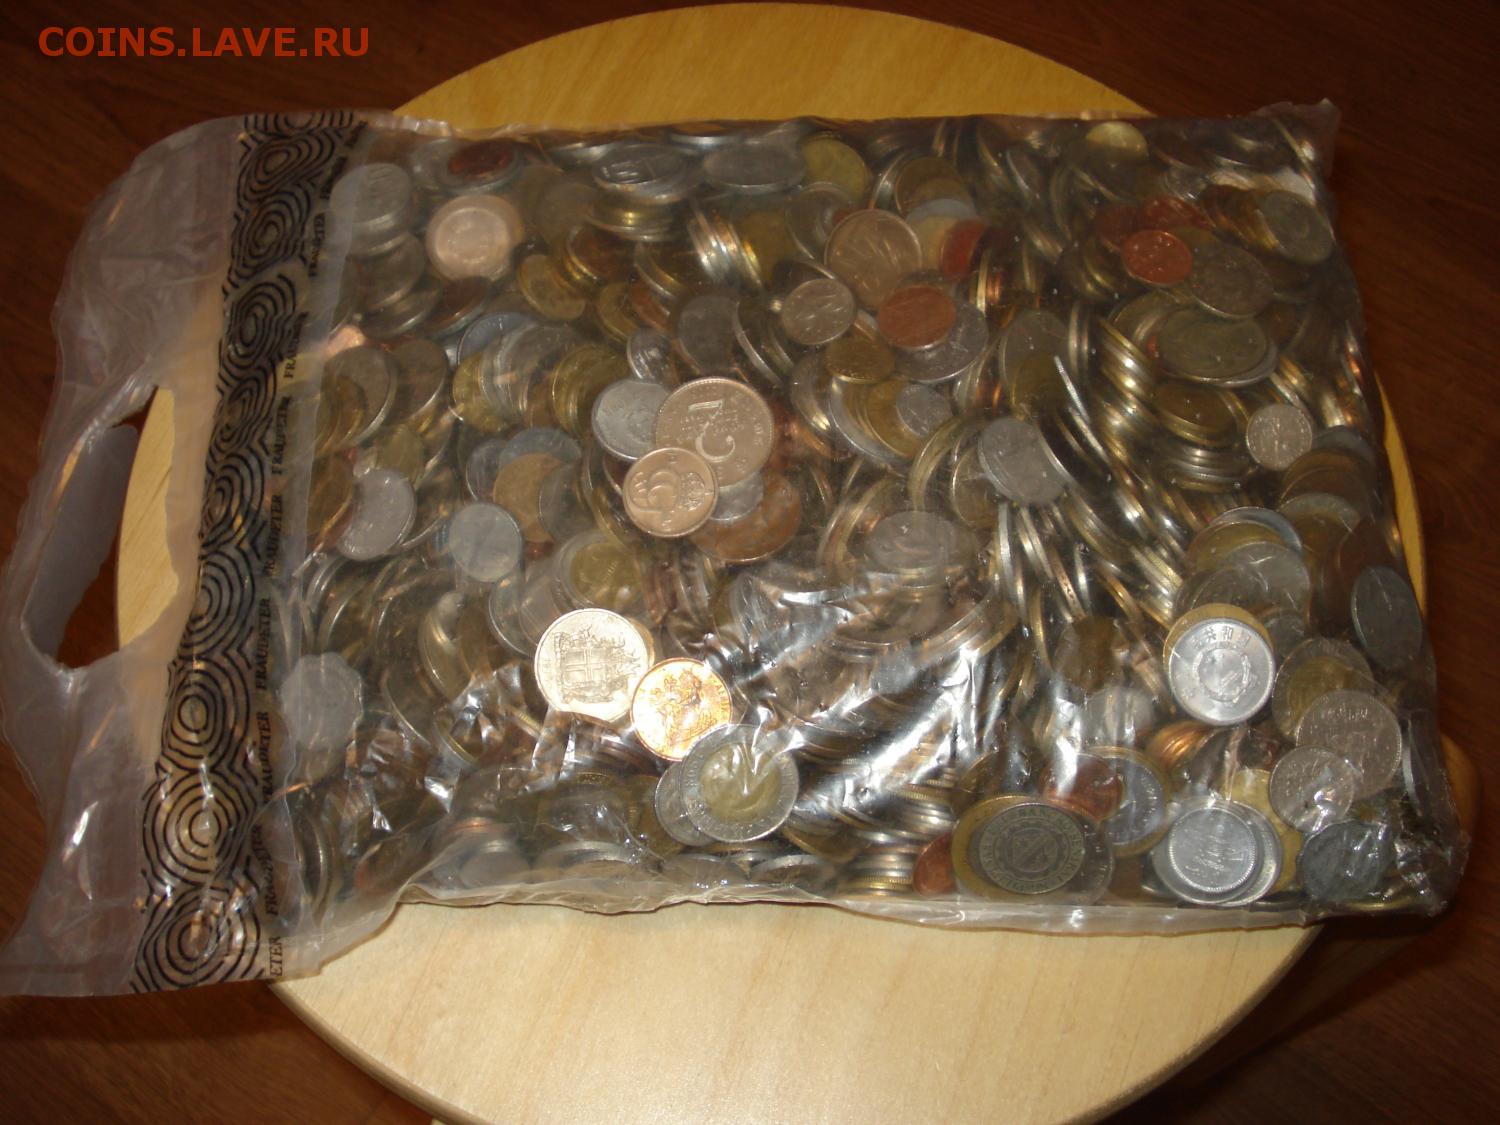 Сколько монет в мешке. Пакет с мелочью. Монеты в запаянных мешках по 10 кг. Мешок с монетами 10 рублей. Монеты в мешках из Европы.